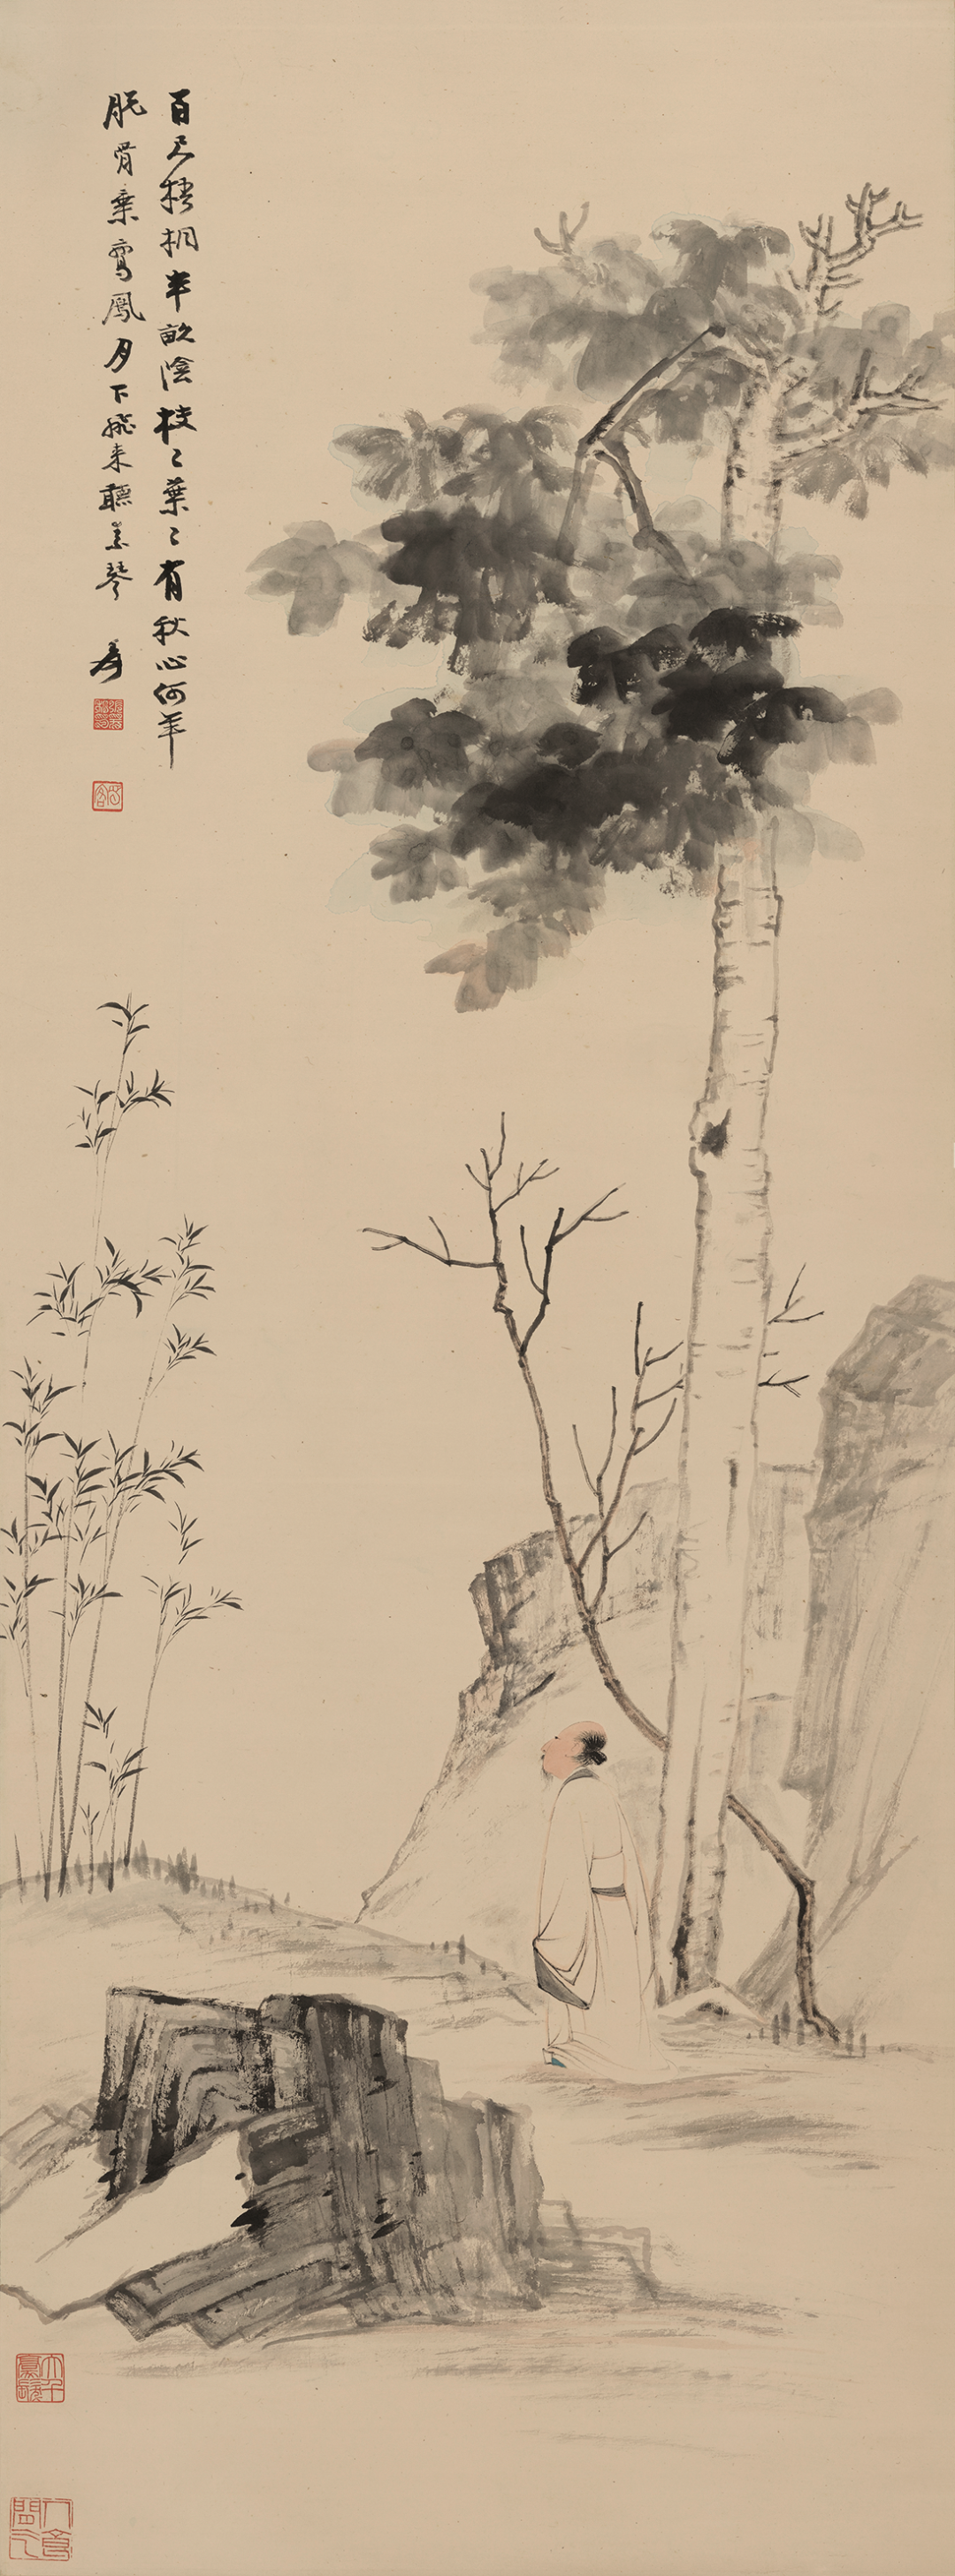 张大千 百尺梧桐半亩荫 纸本设色  纵118.5厘米 横44厘米 南京博物院藏